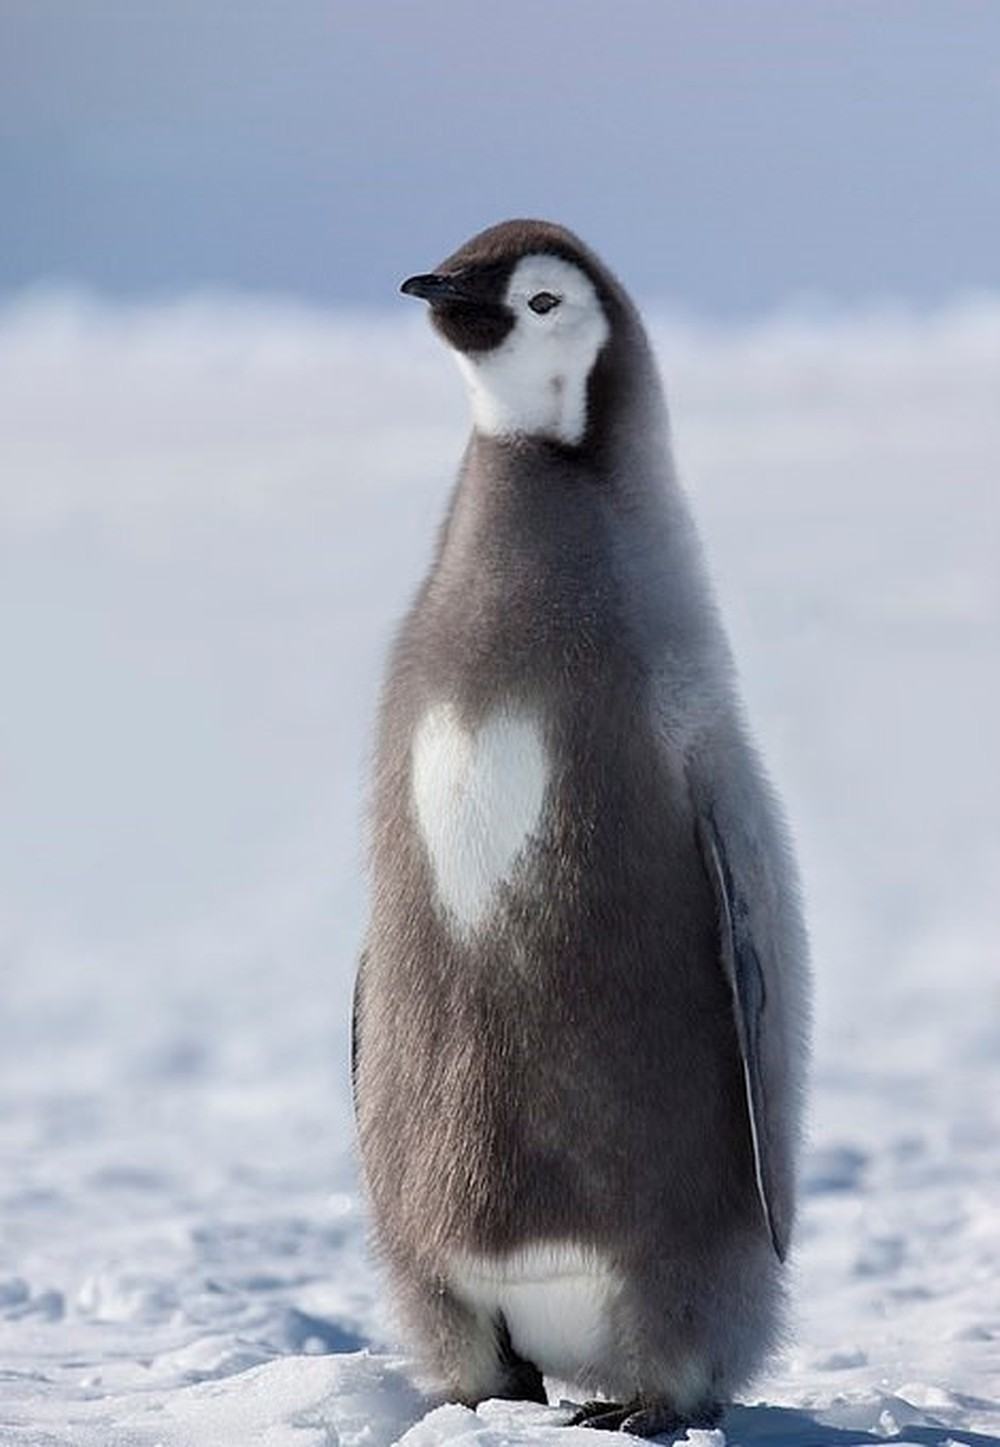 Hình ảnh chú chim cánh cụt con đang nhìn vào thứ gì đó